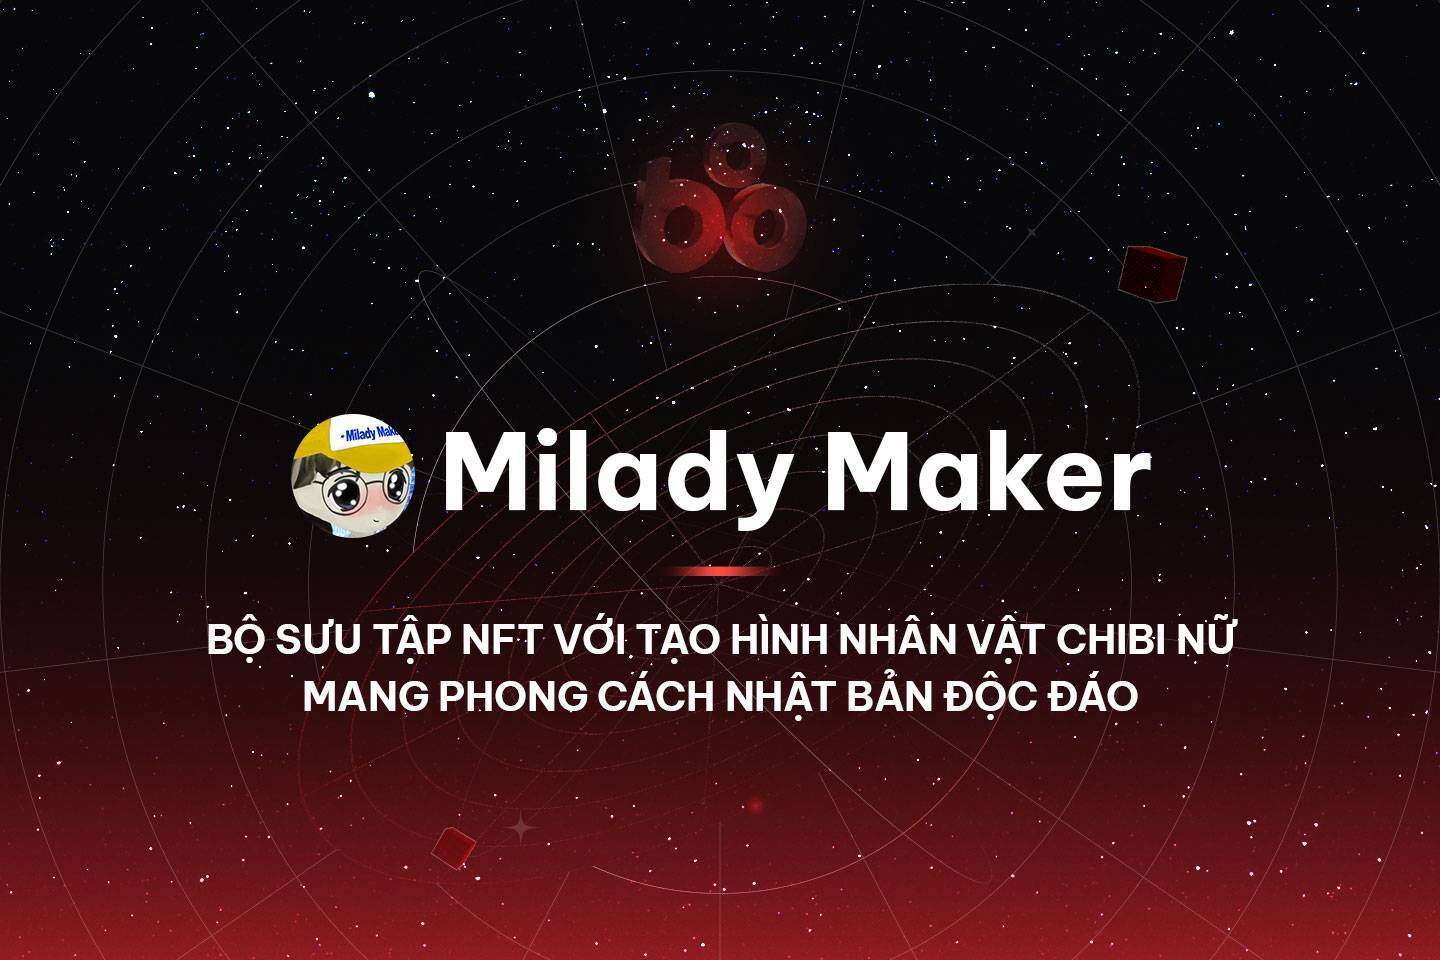 Milady Maker - Bộ Sưu Tập Nft Với Tạo Hình Nhân Vật Chibi Nữ Mang Phong Cách Nhật Bản Độc Đáo